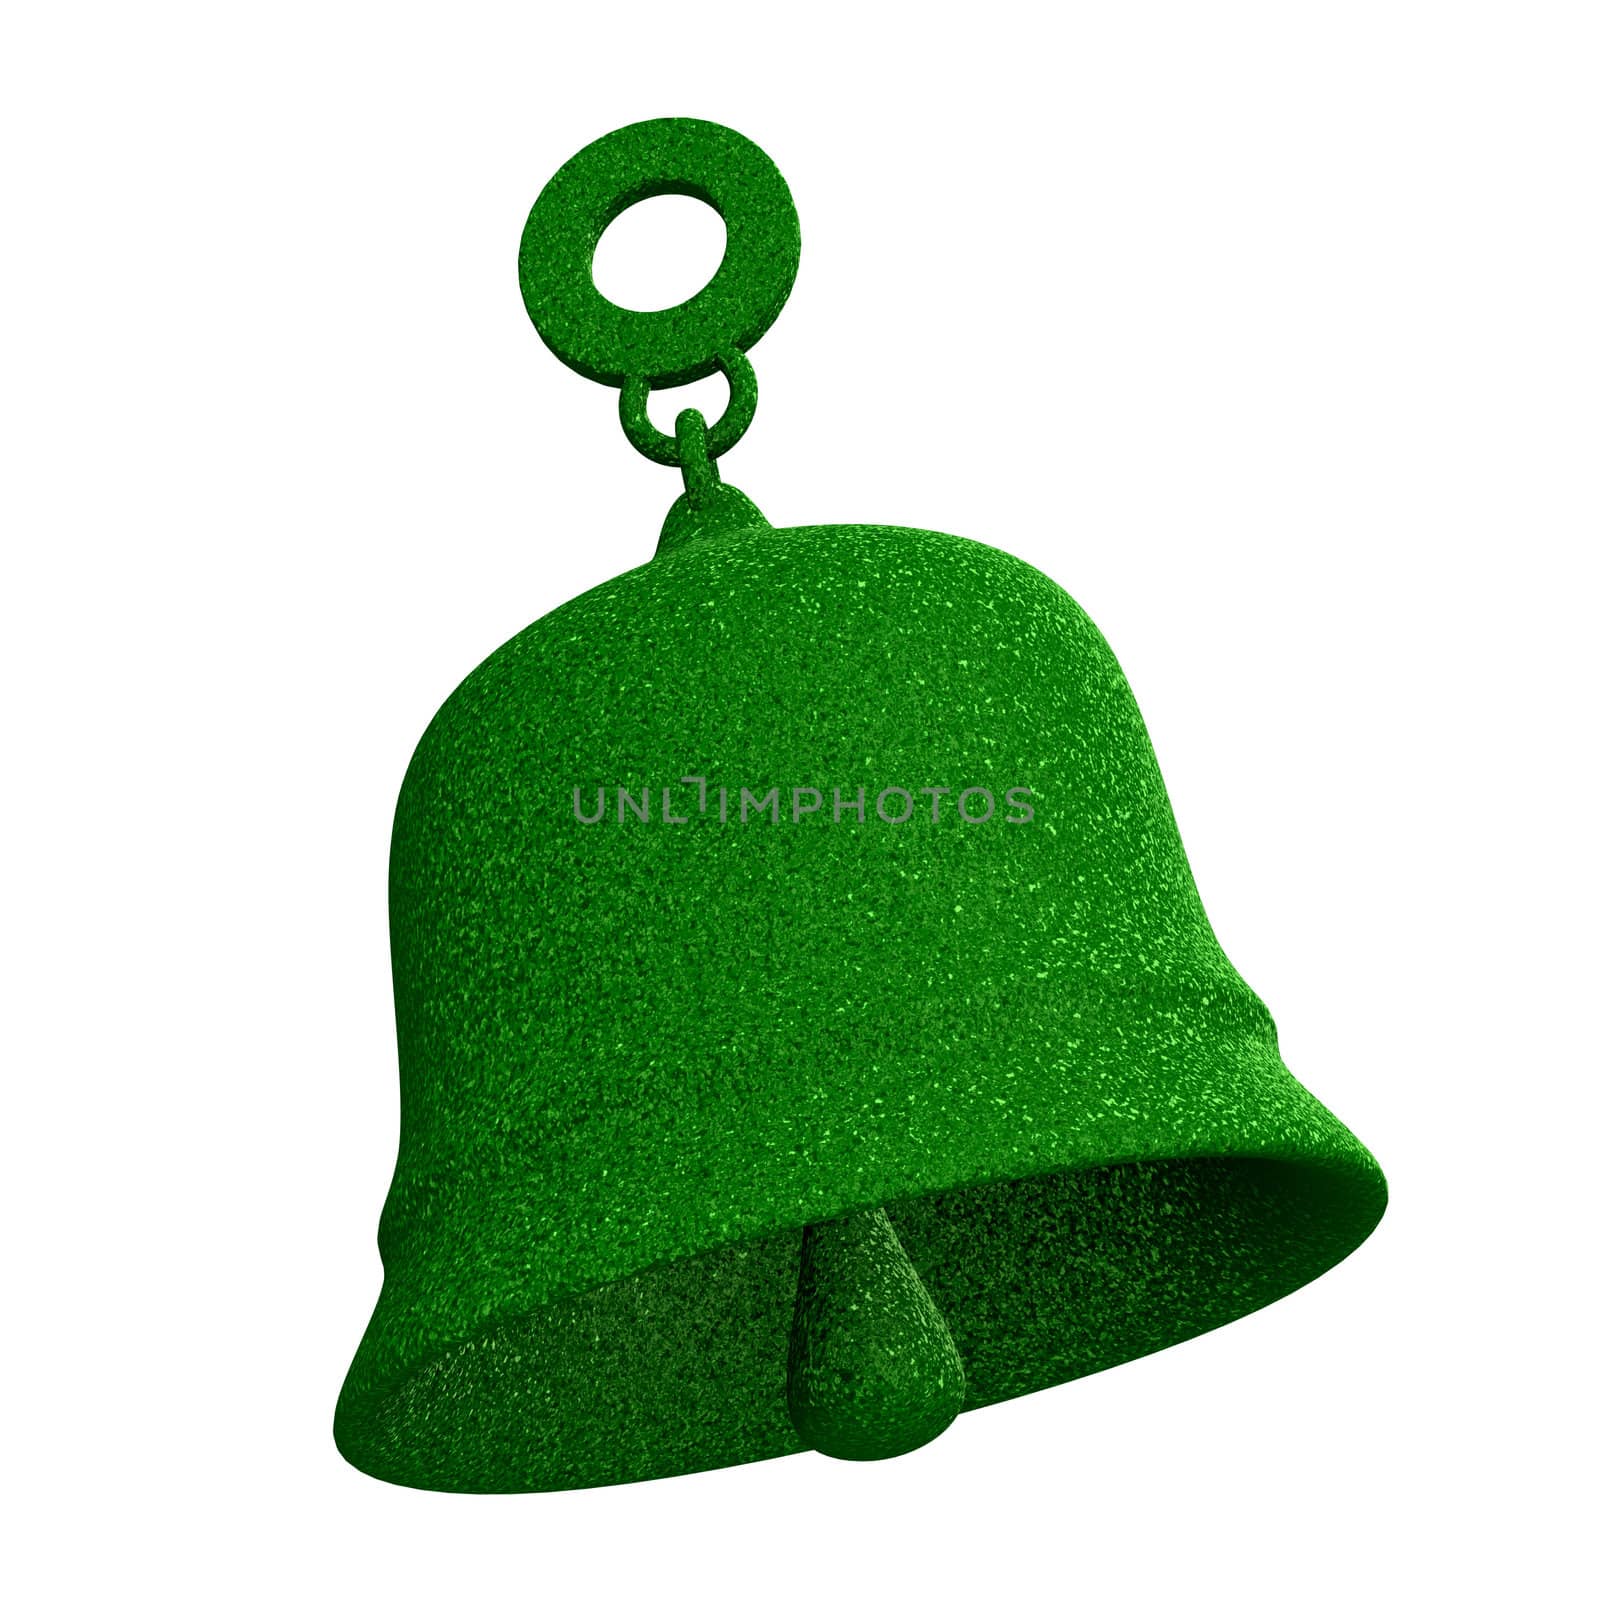 bell in green grass (3D made) 